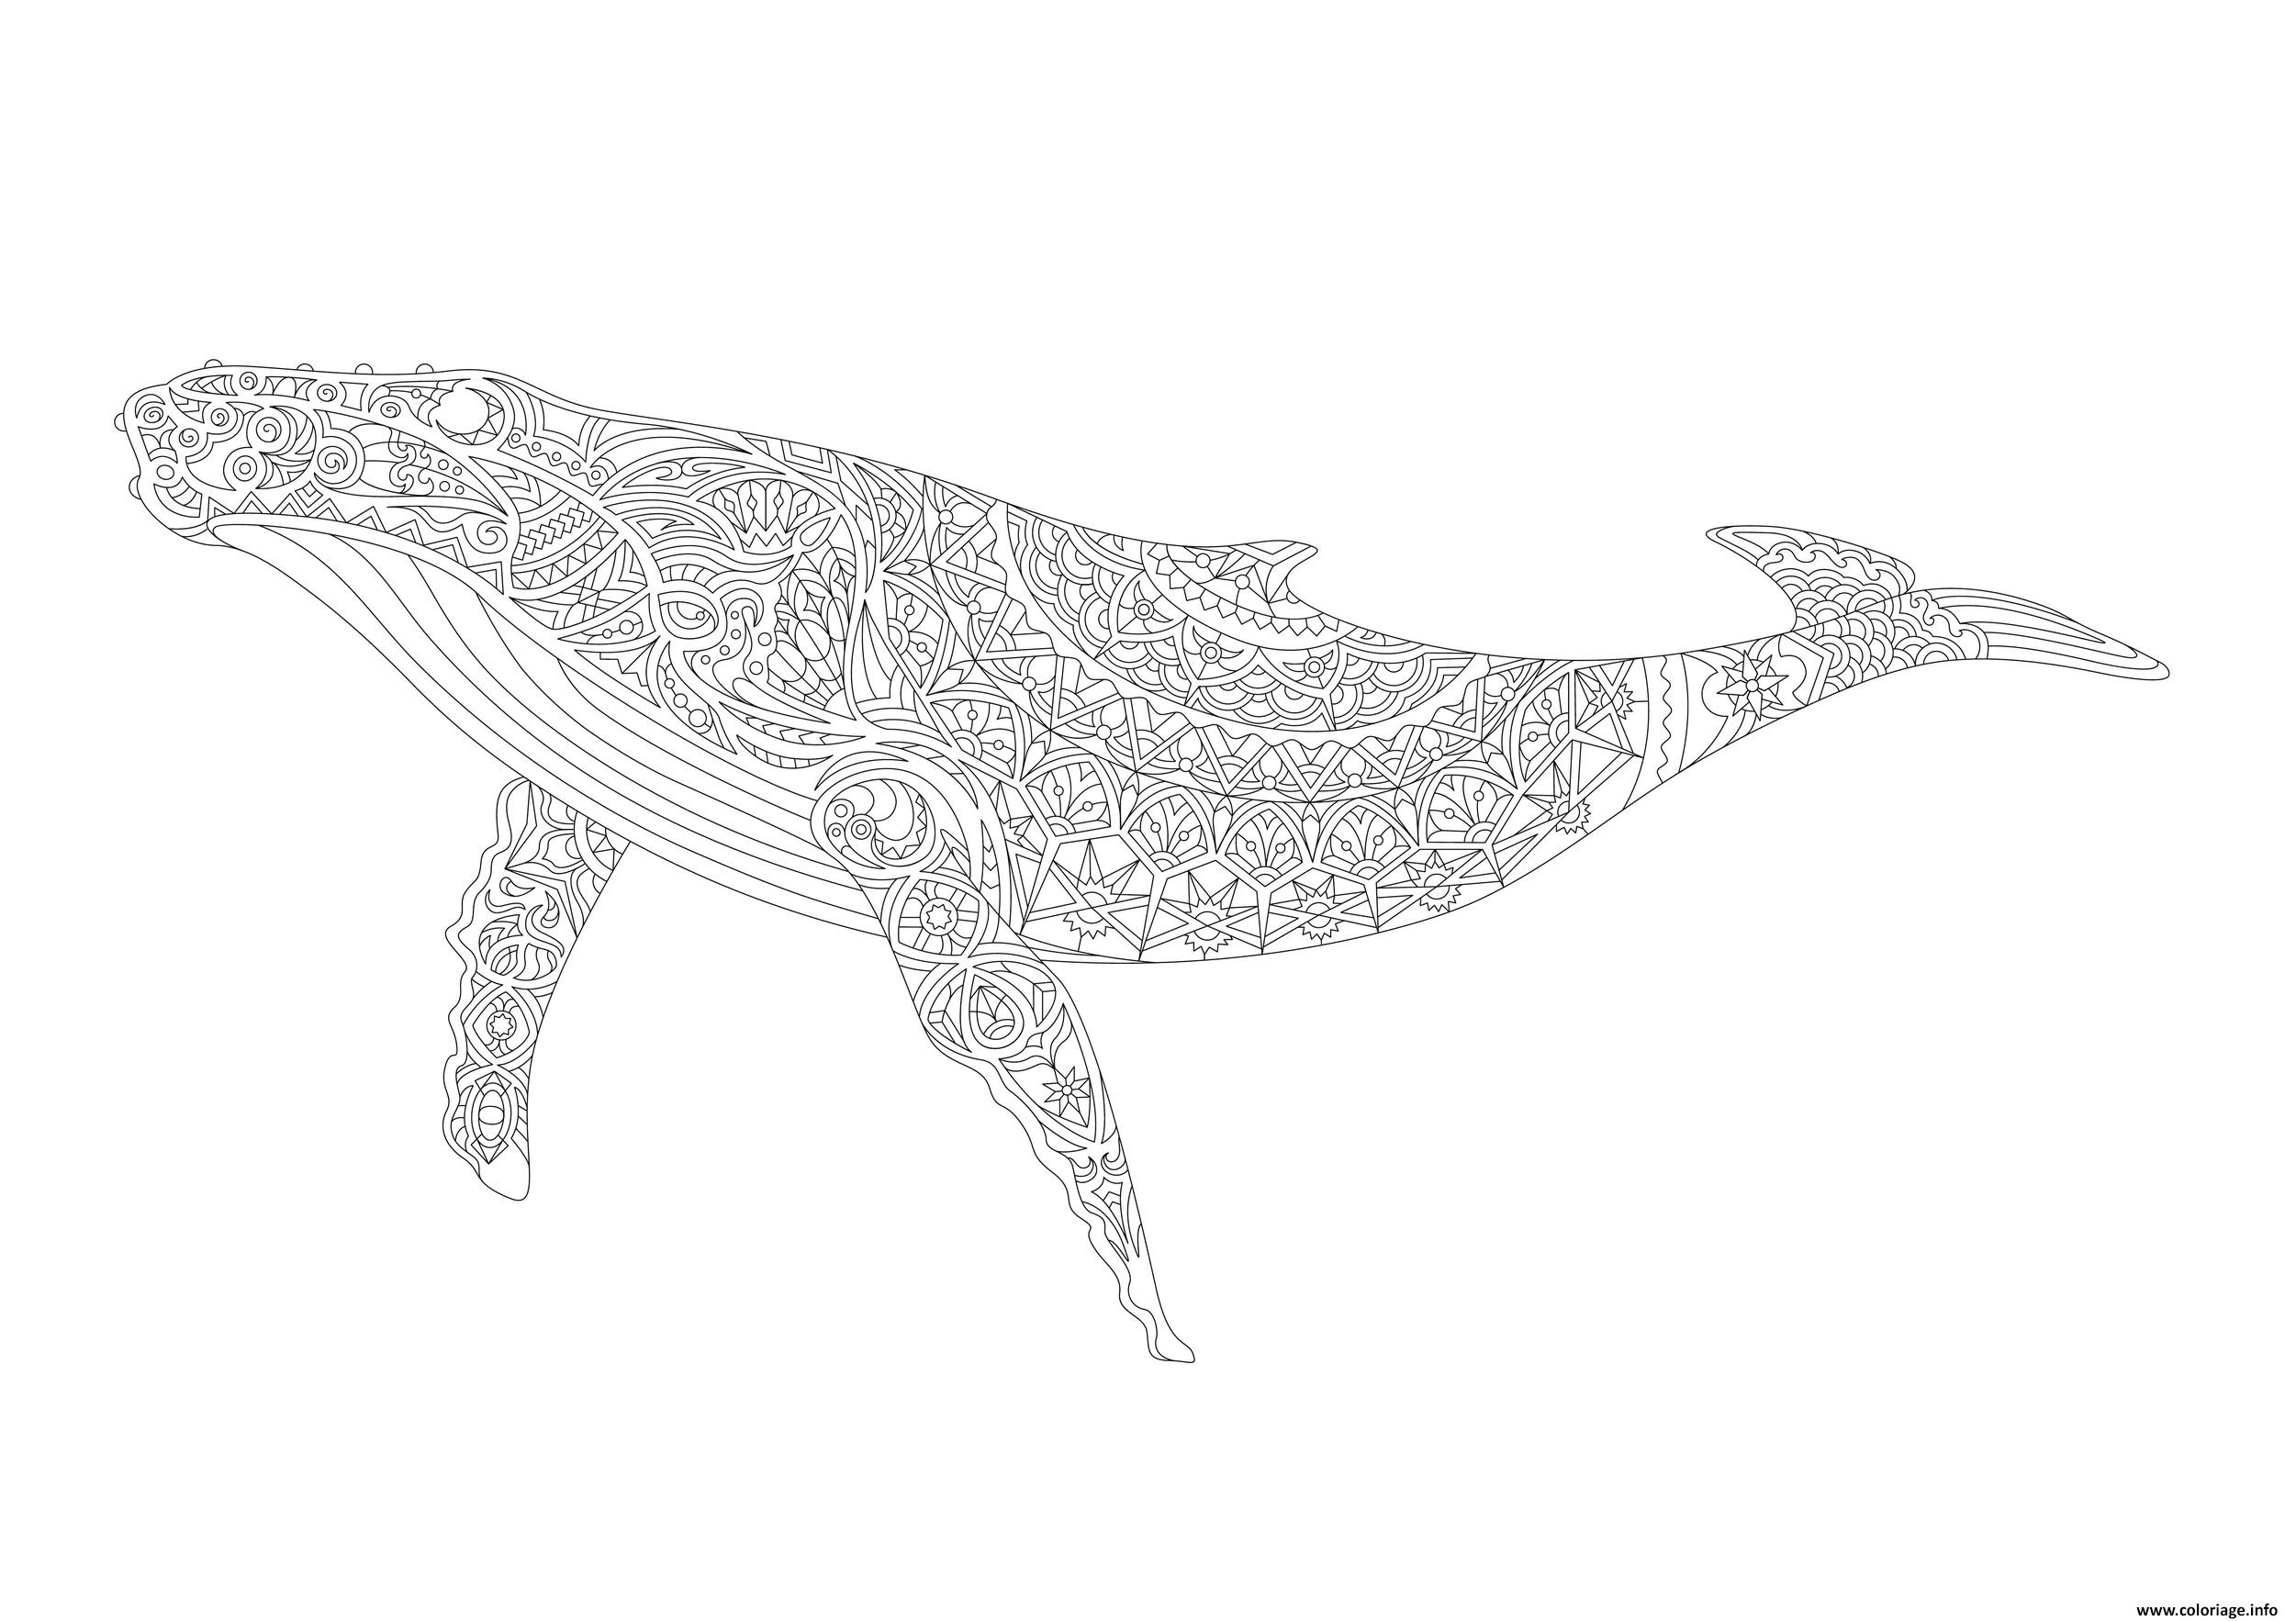 Image d'une baleine adulte dessinée avec la technique du zentangle